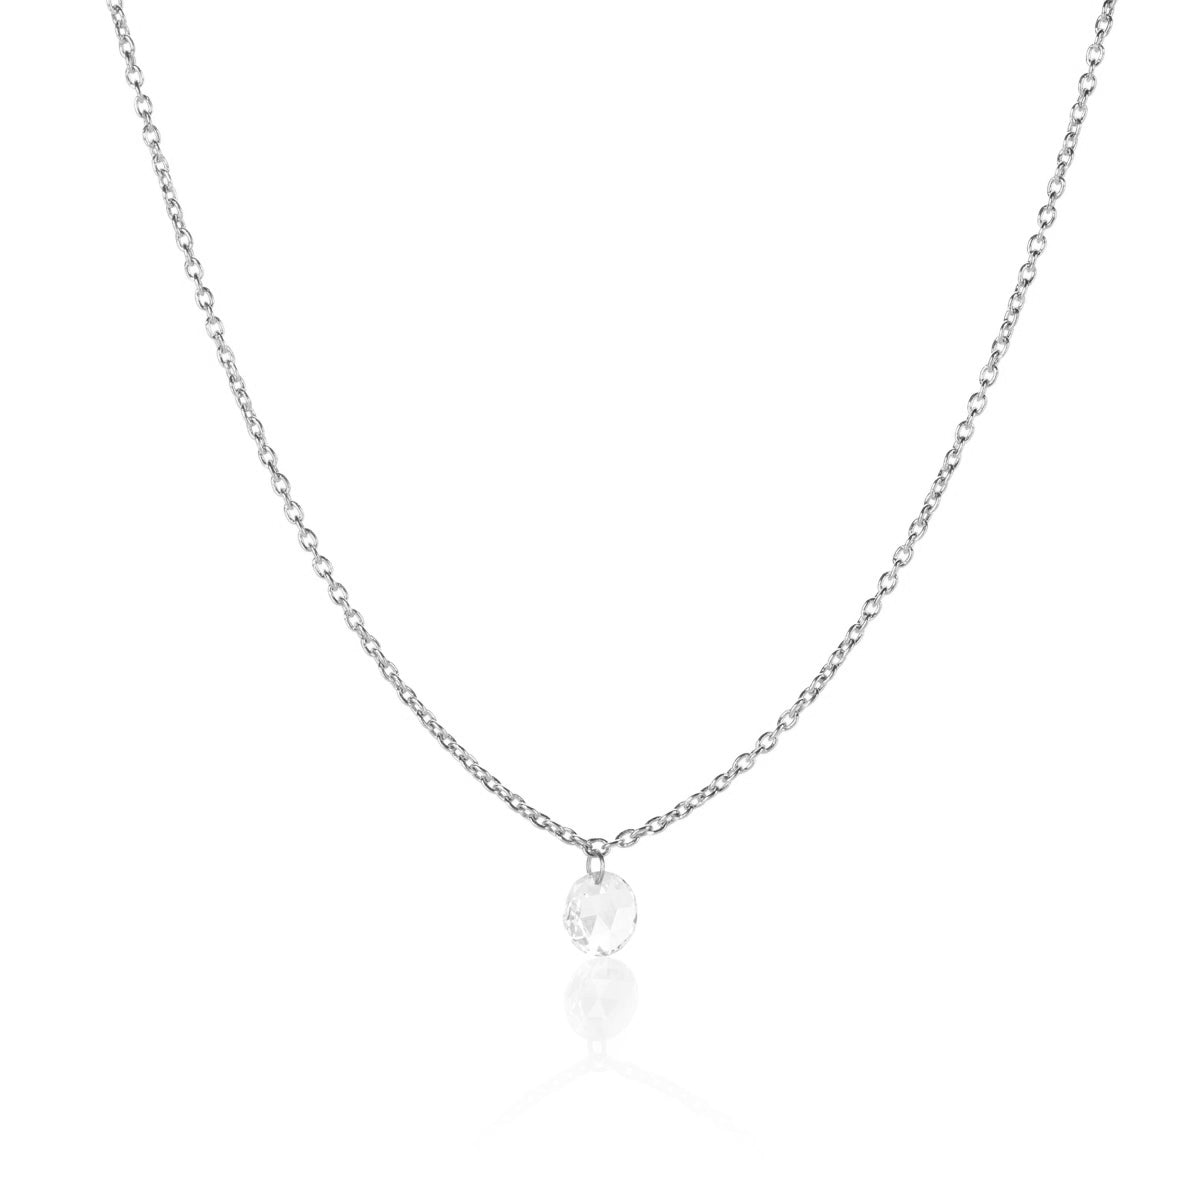 Cien Rose Cut Diamond Necklace